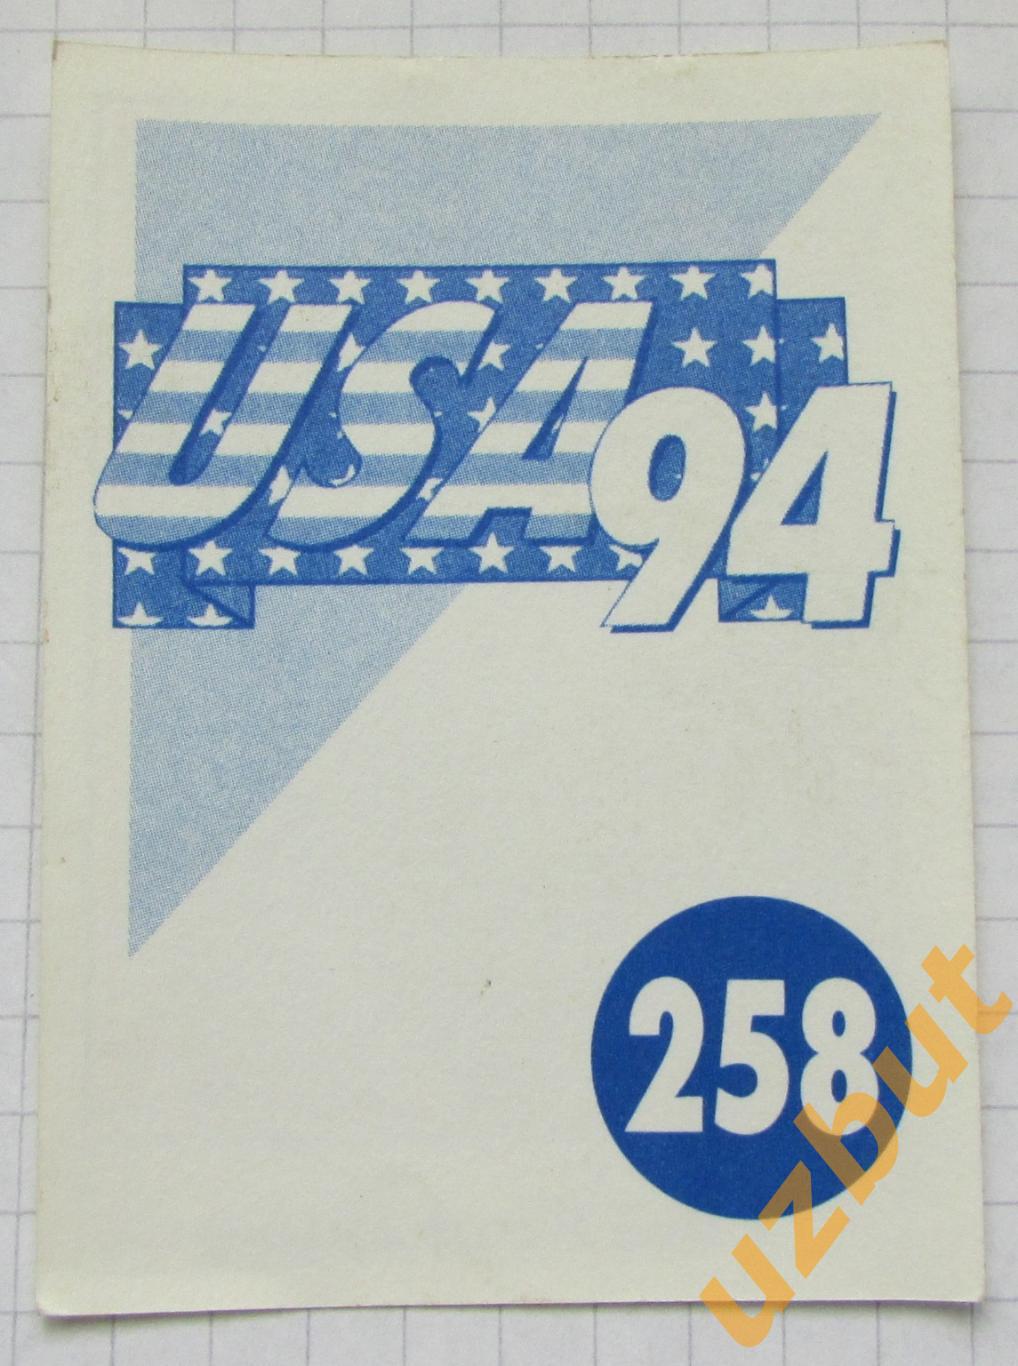 Наклейка Эмил Кременлиев Болгария № 258 Euroflash ЧМ 1994 США 1